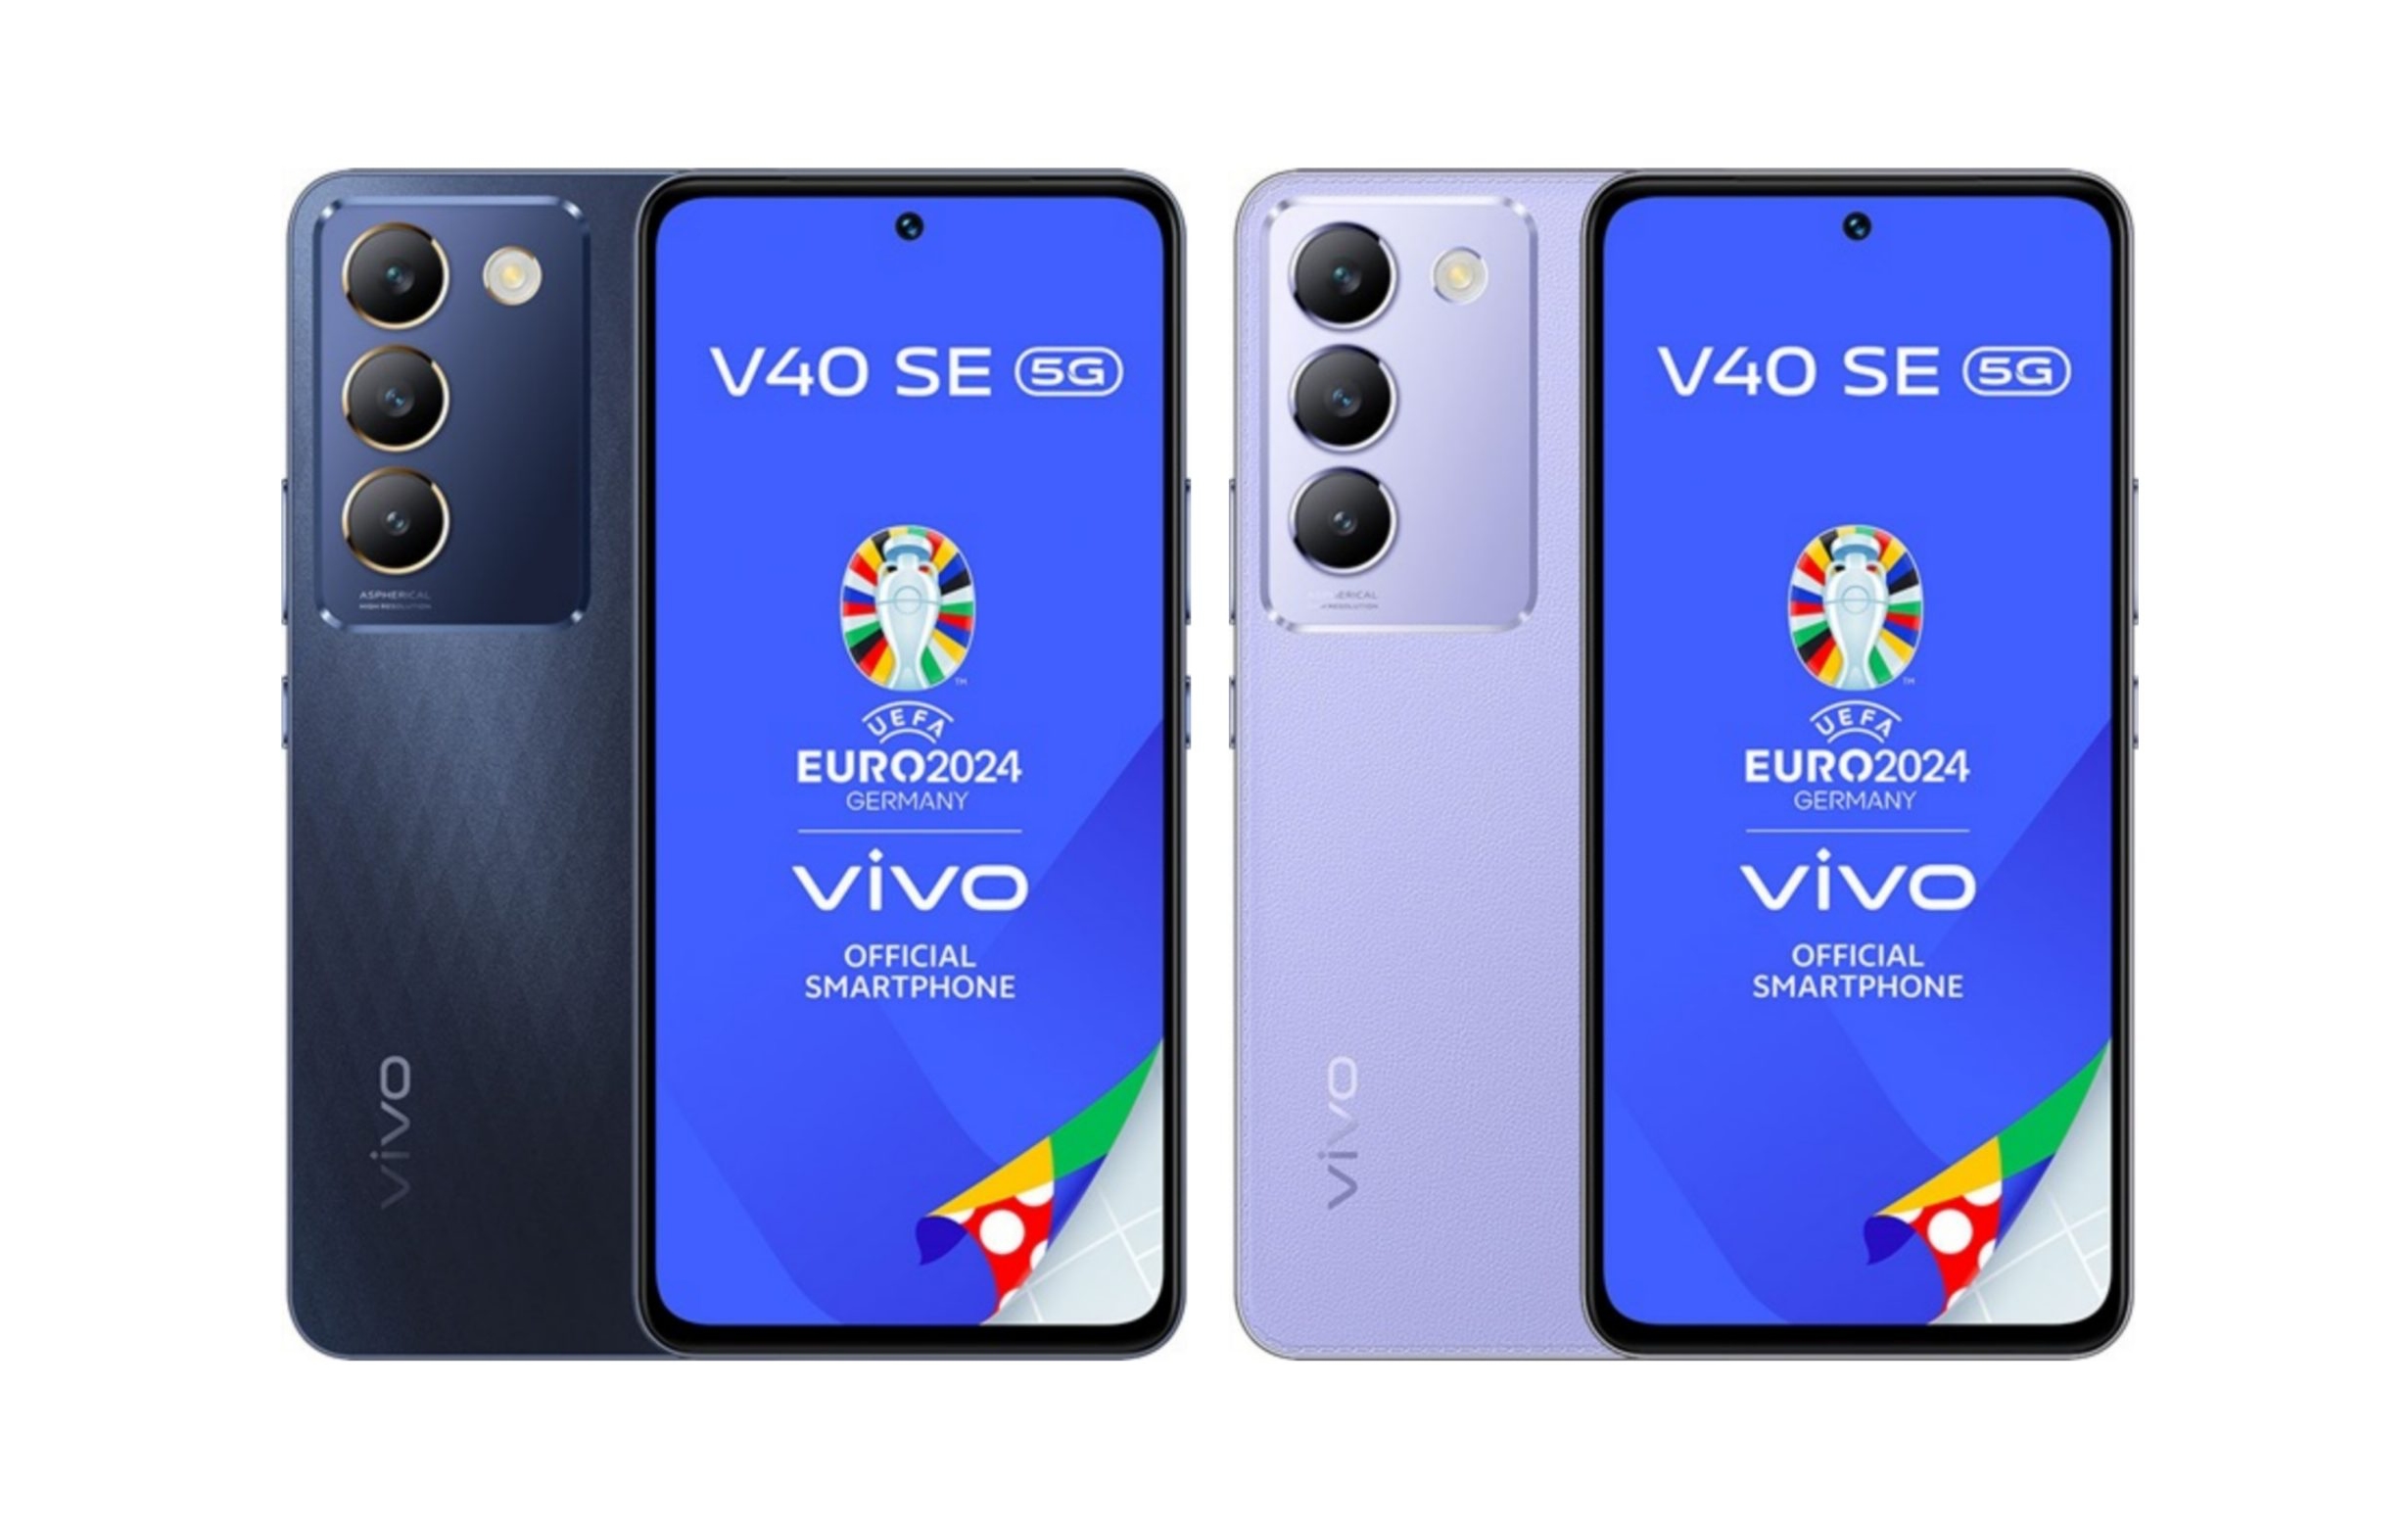 Ein Insider hat das Aussehen, die technischen Daten und den europäischen Preis des Smartphones vivo V40 SE enthüllt